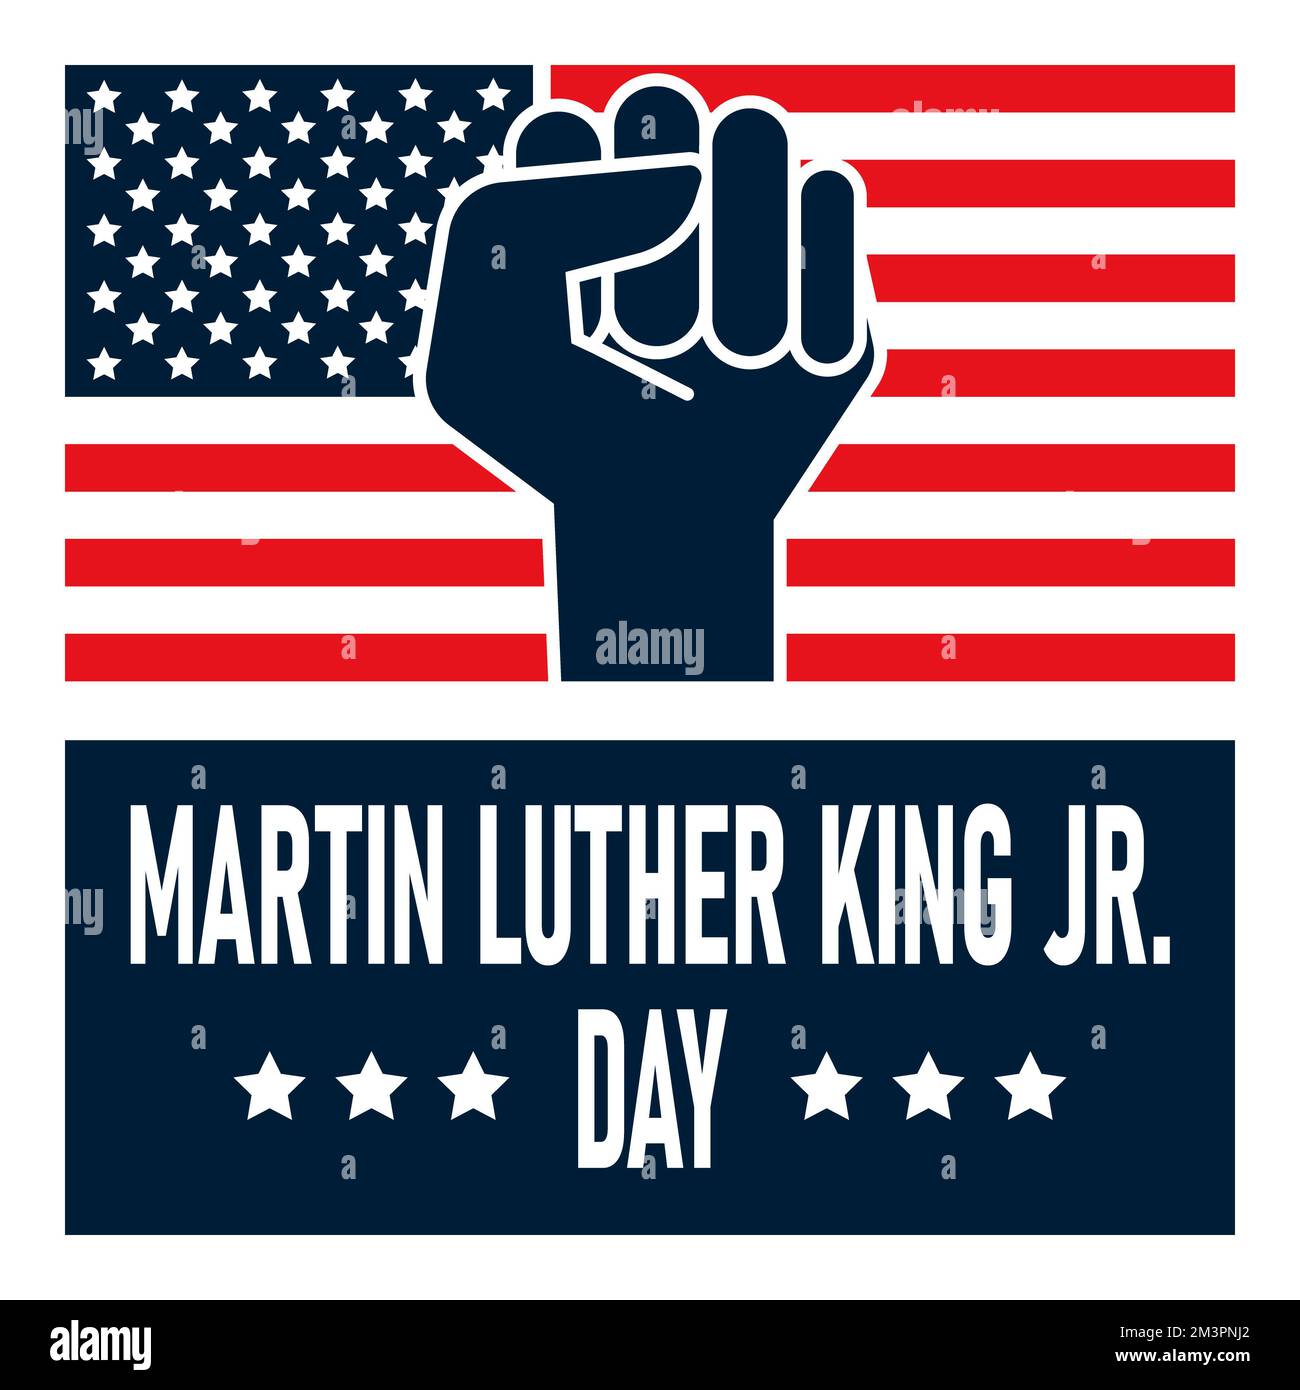 Histoire de Martin Luther King Jr Day. Illustration vectorielle. Banque D'Images